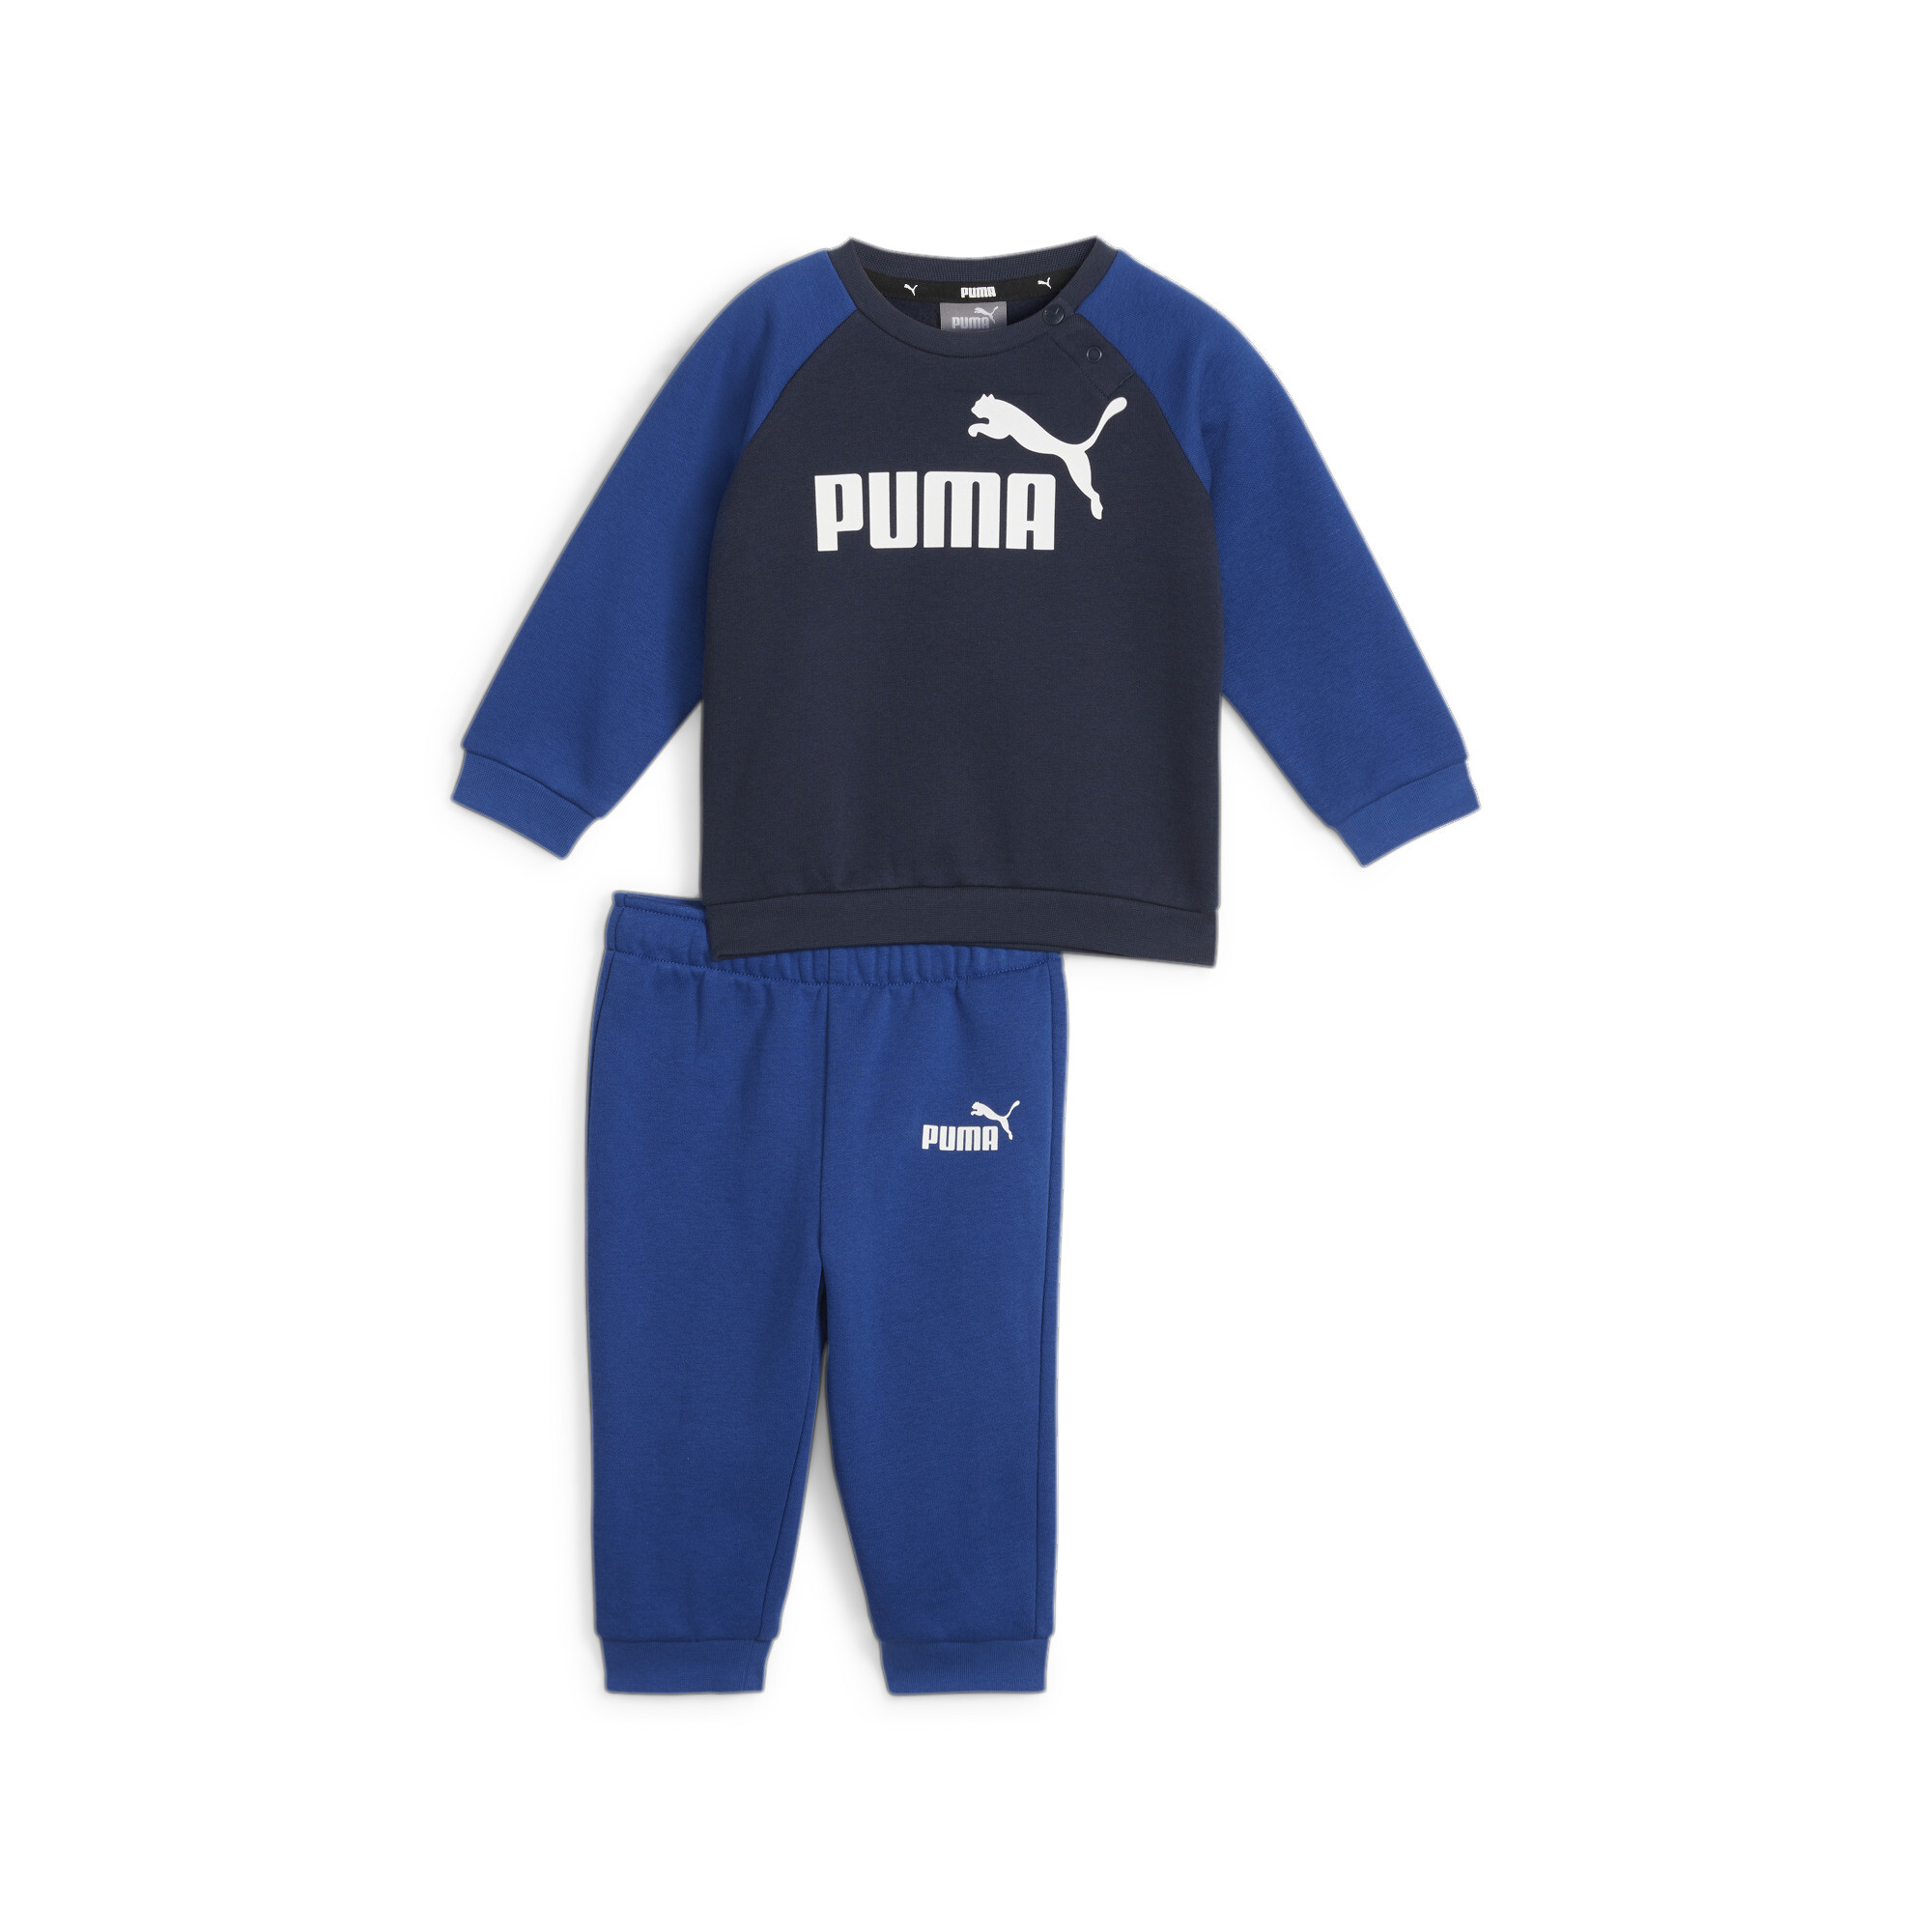 Puma Minicats Essentials Raglan Babies' Jogger Set, Blue, Size 12-18M, Clothing